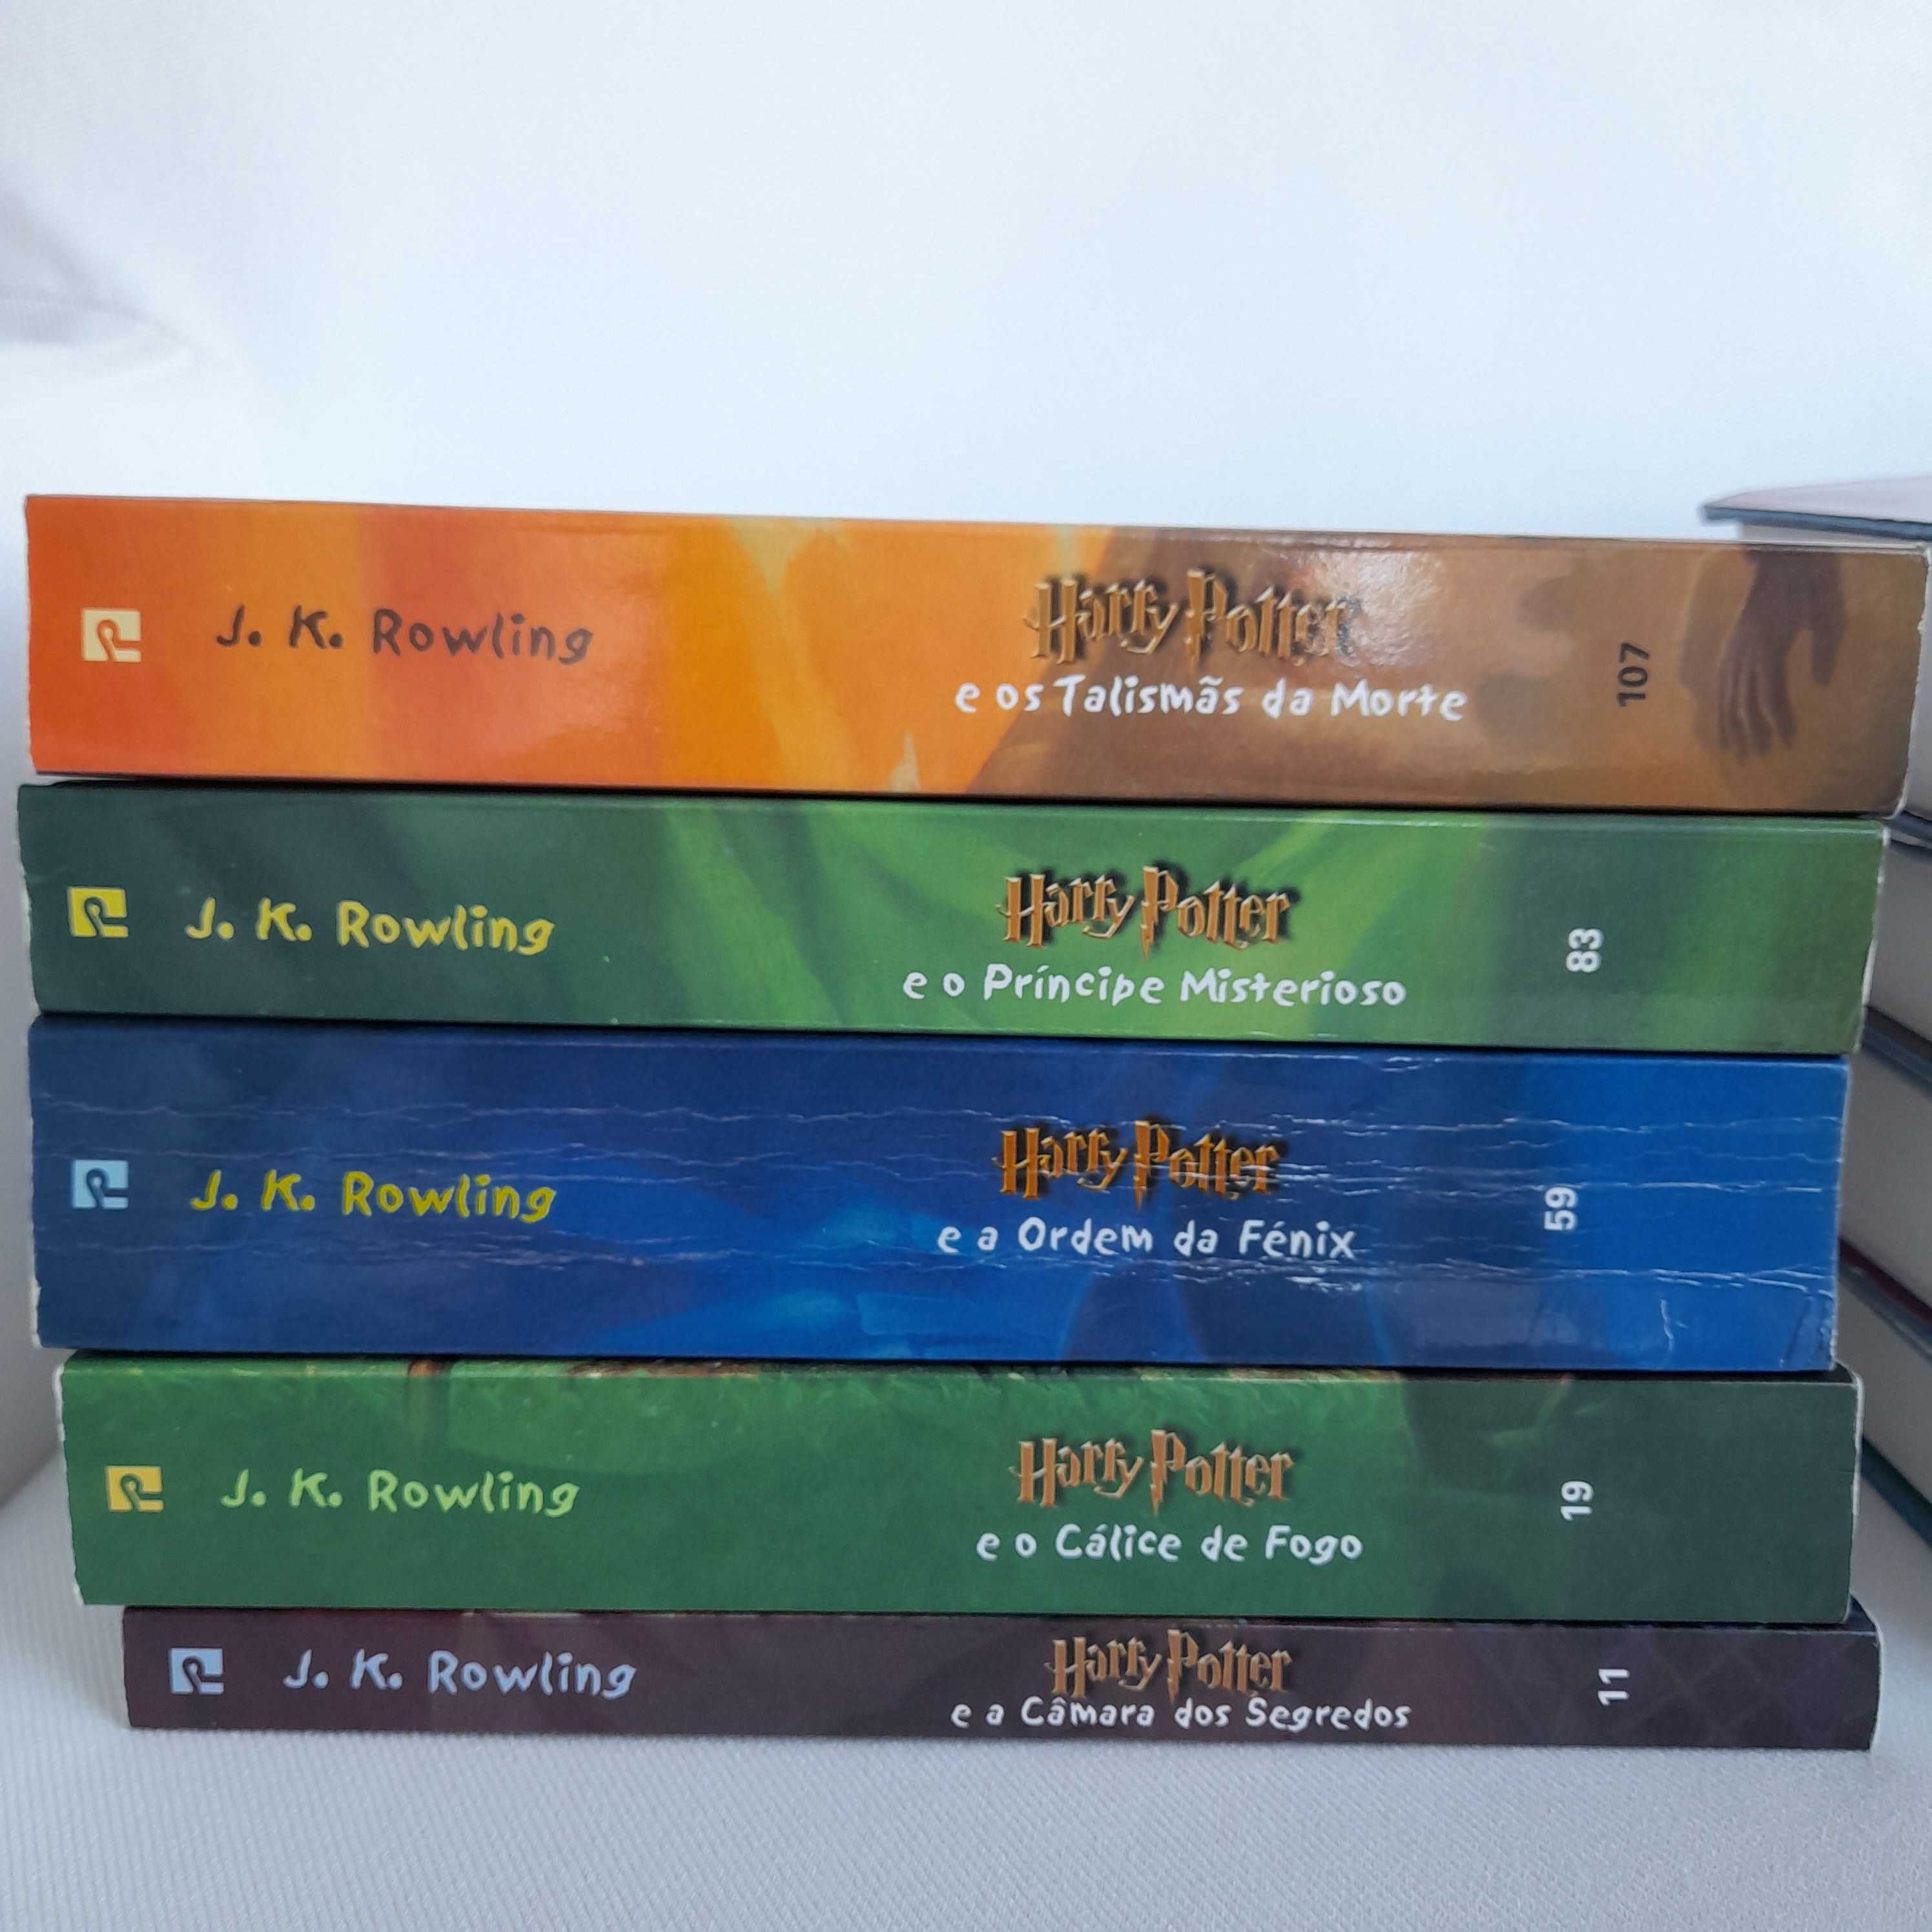 Colecção Harry Potter (primeira versão portuguesa)